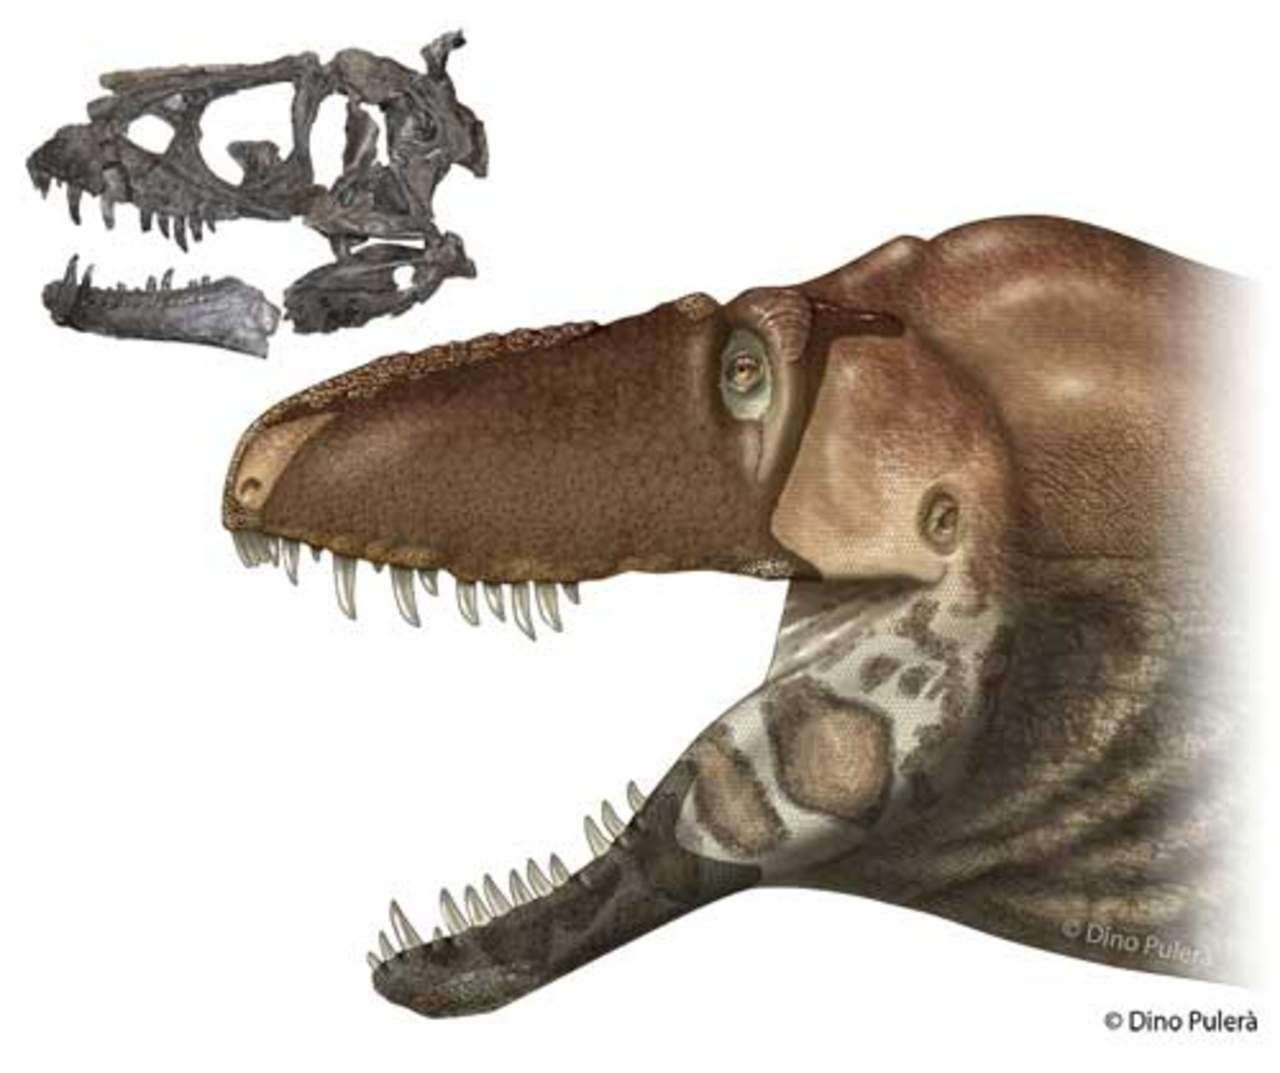 La evidencia fósil fue hallada en Montana y su análisis ofreció gran cantidad de datos sobre biomecánica, anatomía y evolución que revelaron se trataba de un nuevo taxón de tiranosaurio, identificado ahora como Daspletosaurus horneri. (ESPECIAL)